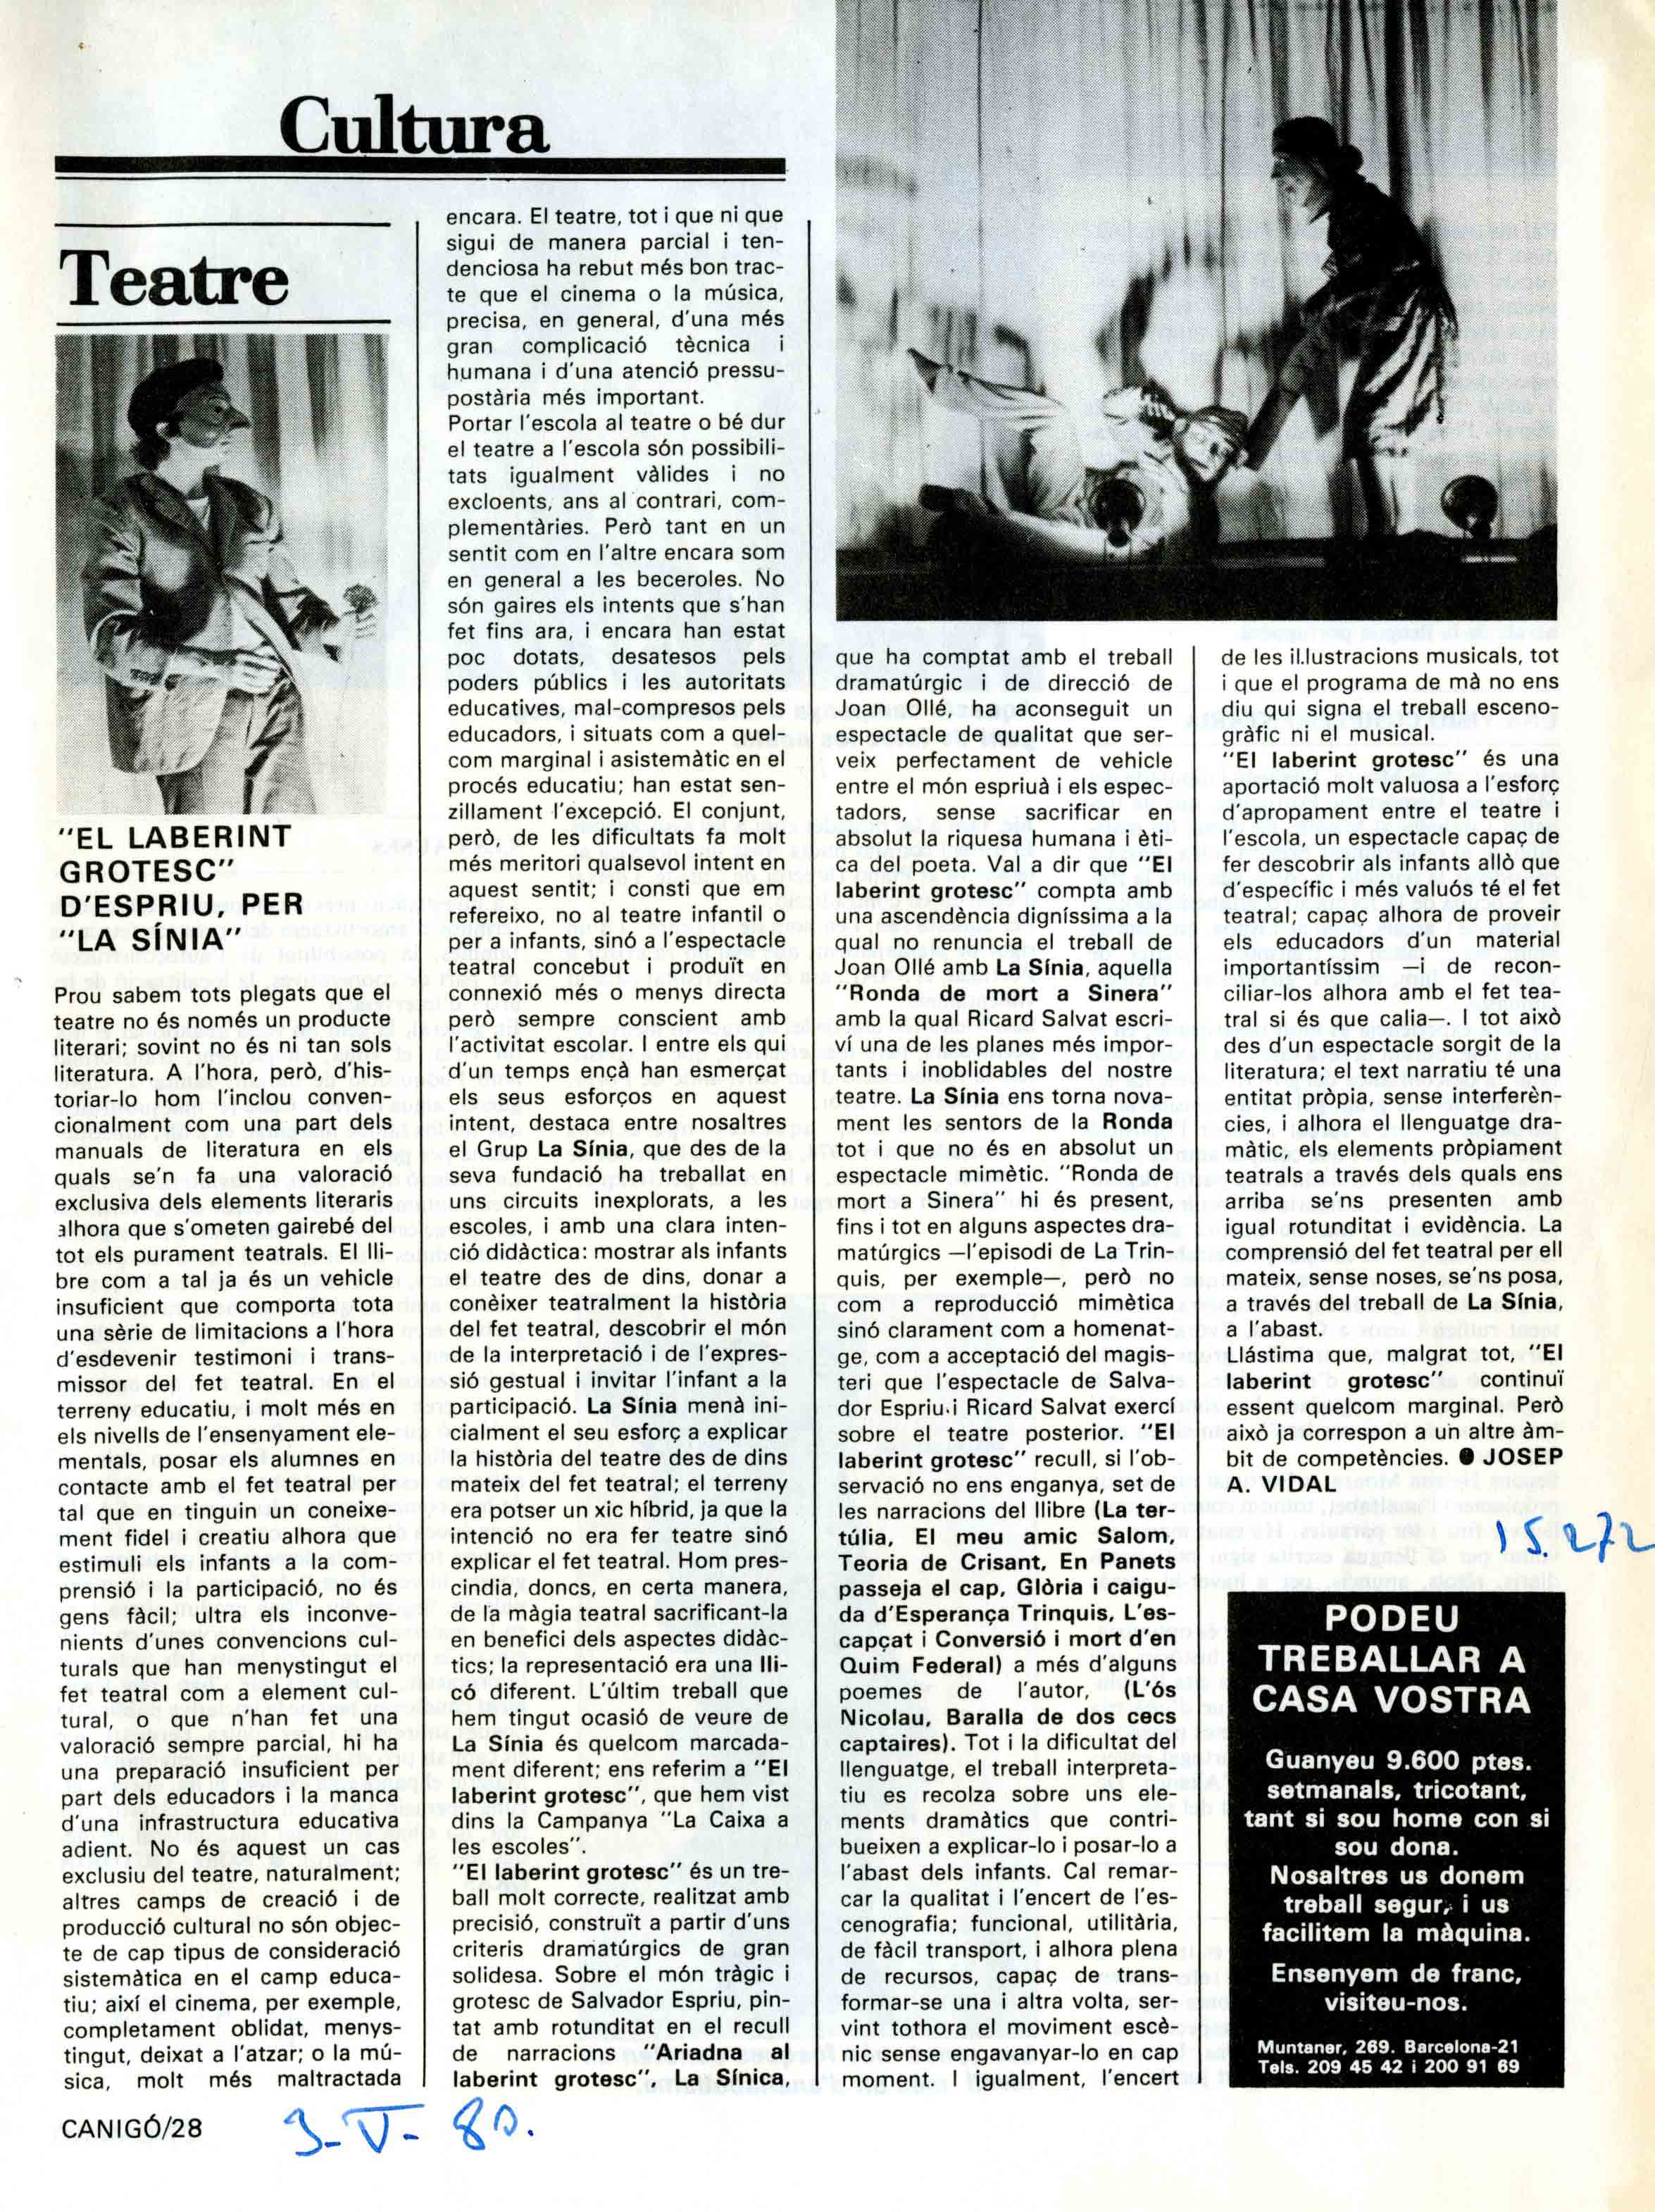 Premsa. Vidal, Josep A. Canigó. Cultura, 03/05/1980